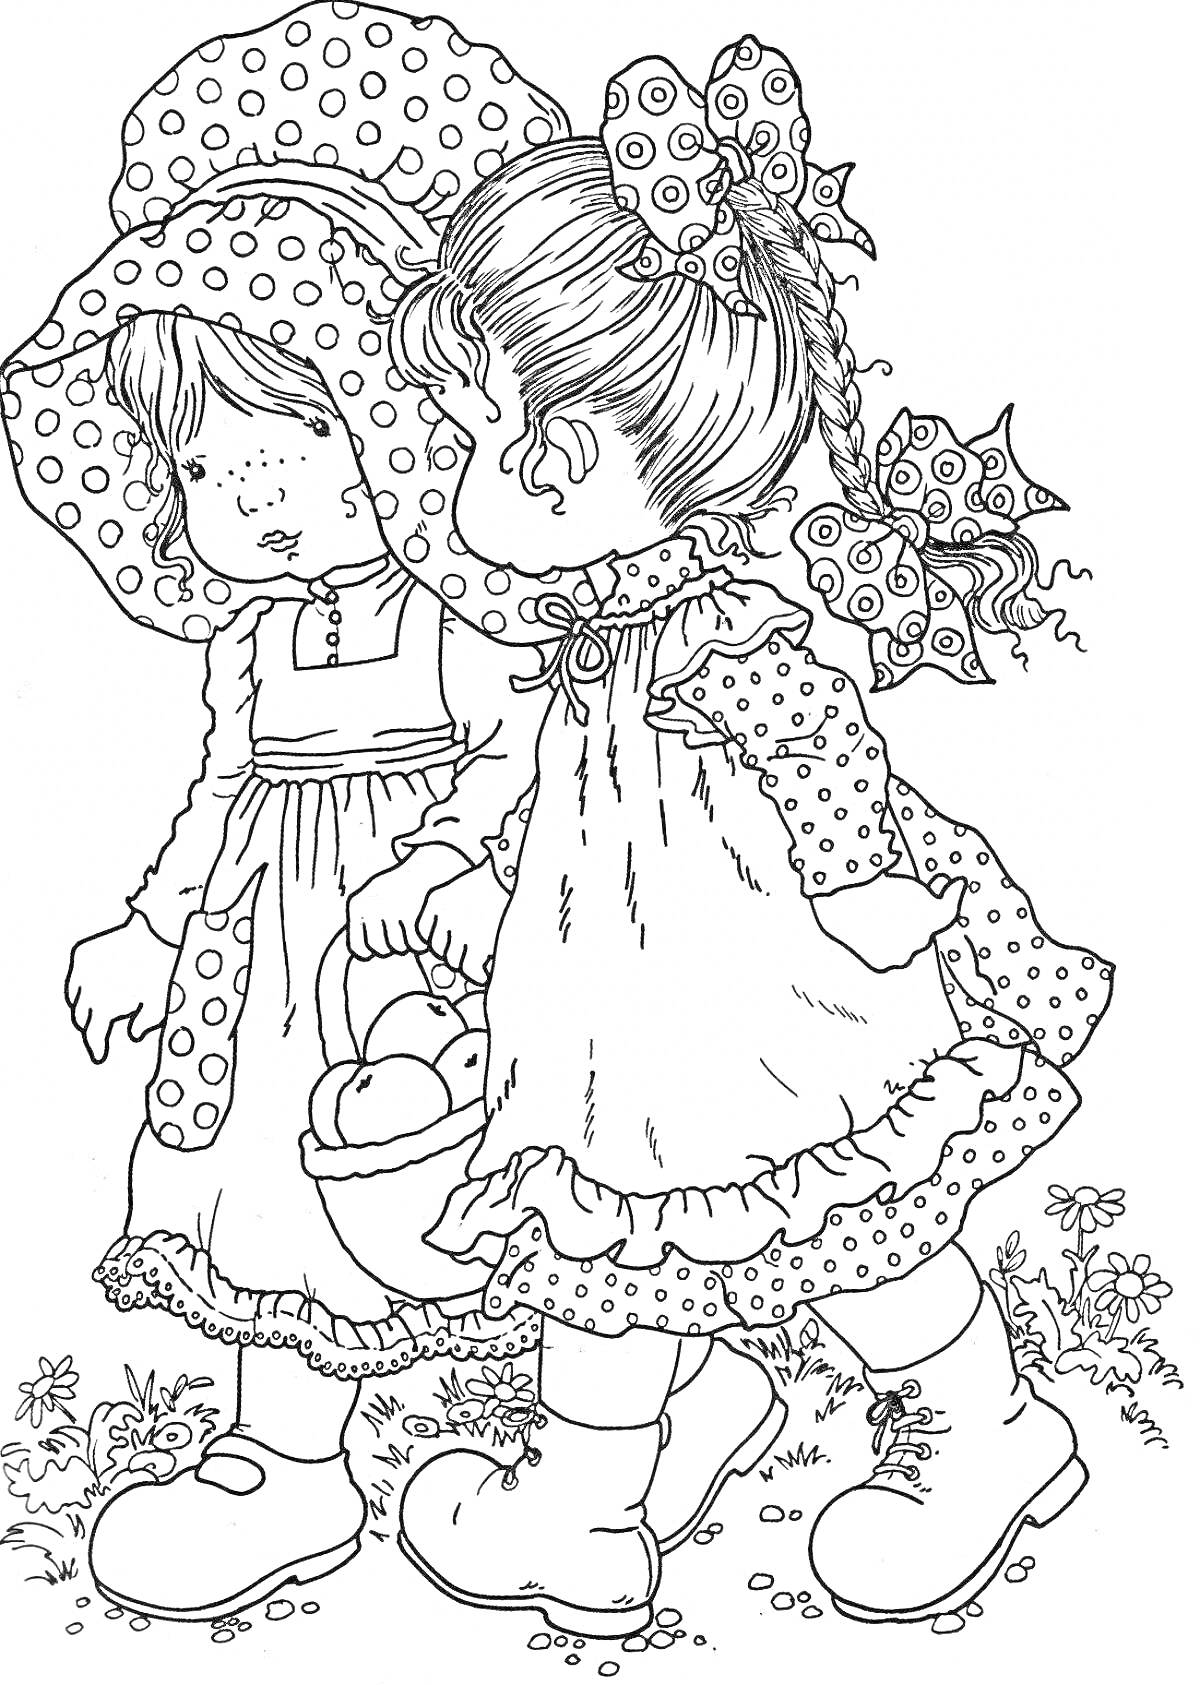 Раскраска Девочки в платьях и шляпках с корзинкой, стоящие на траве с цветами